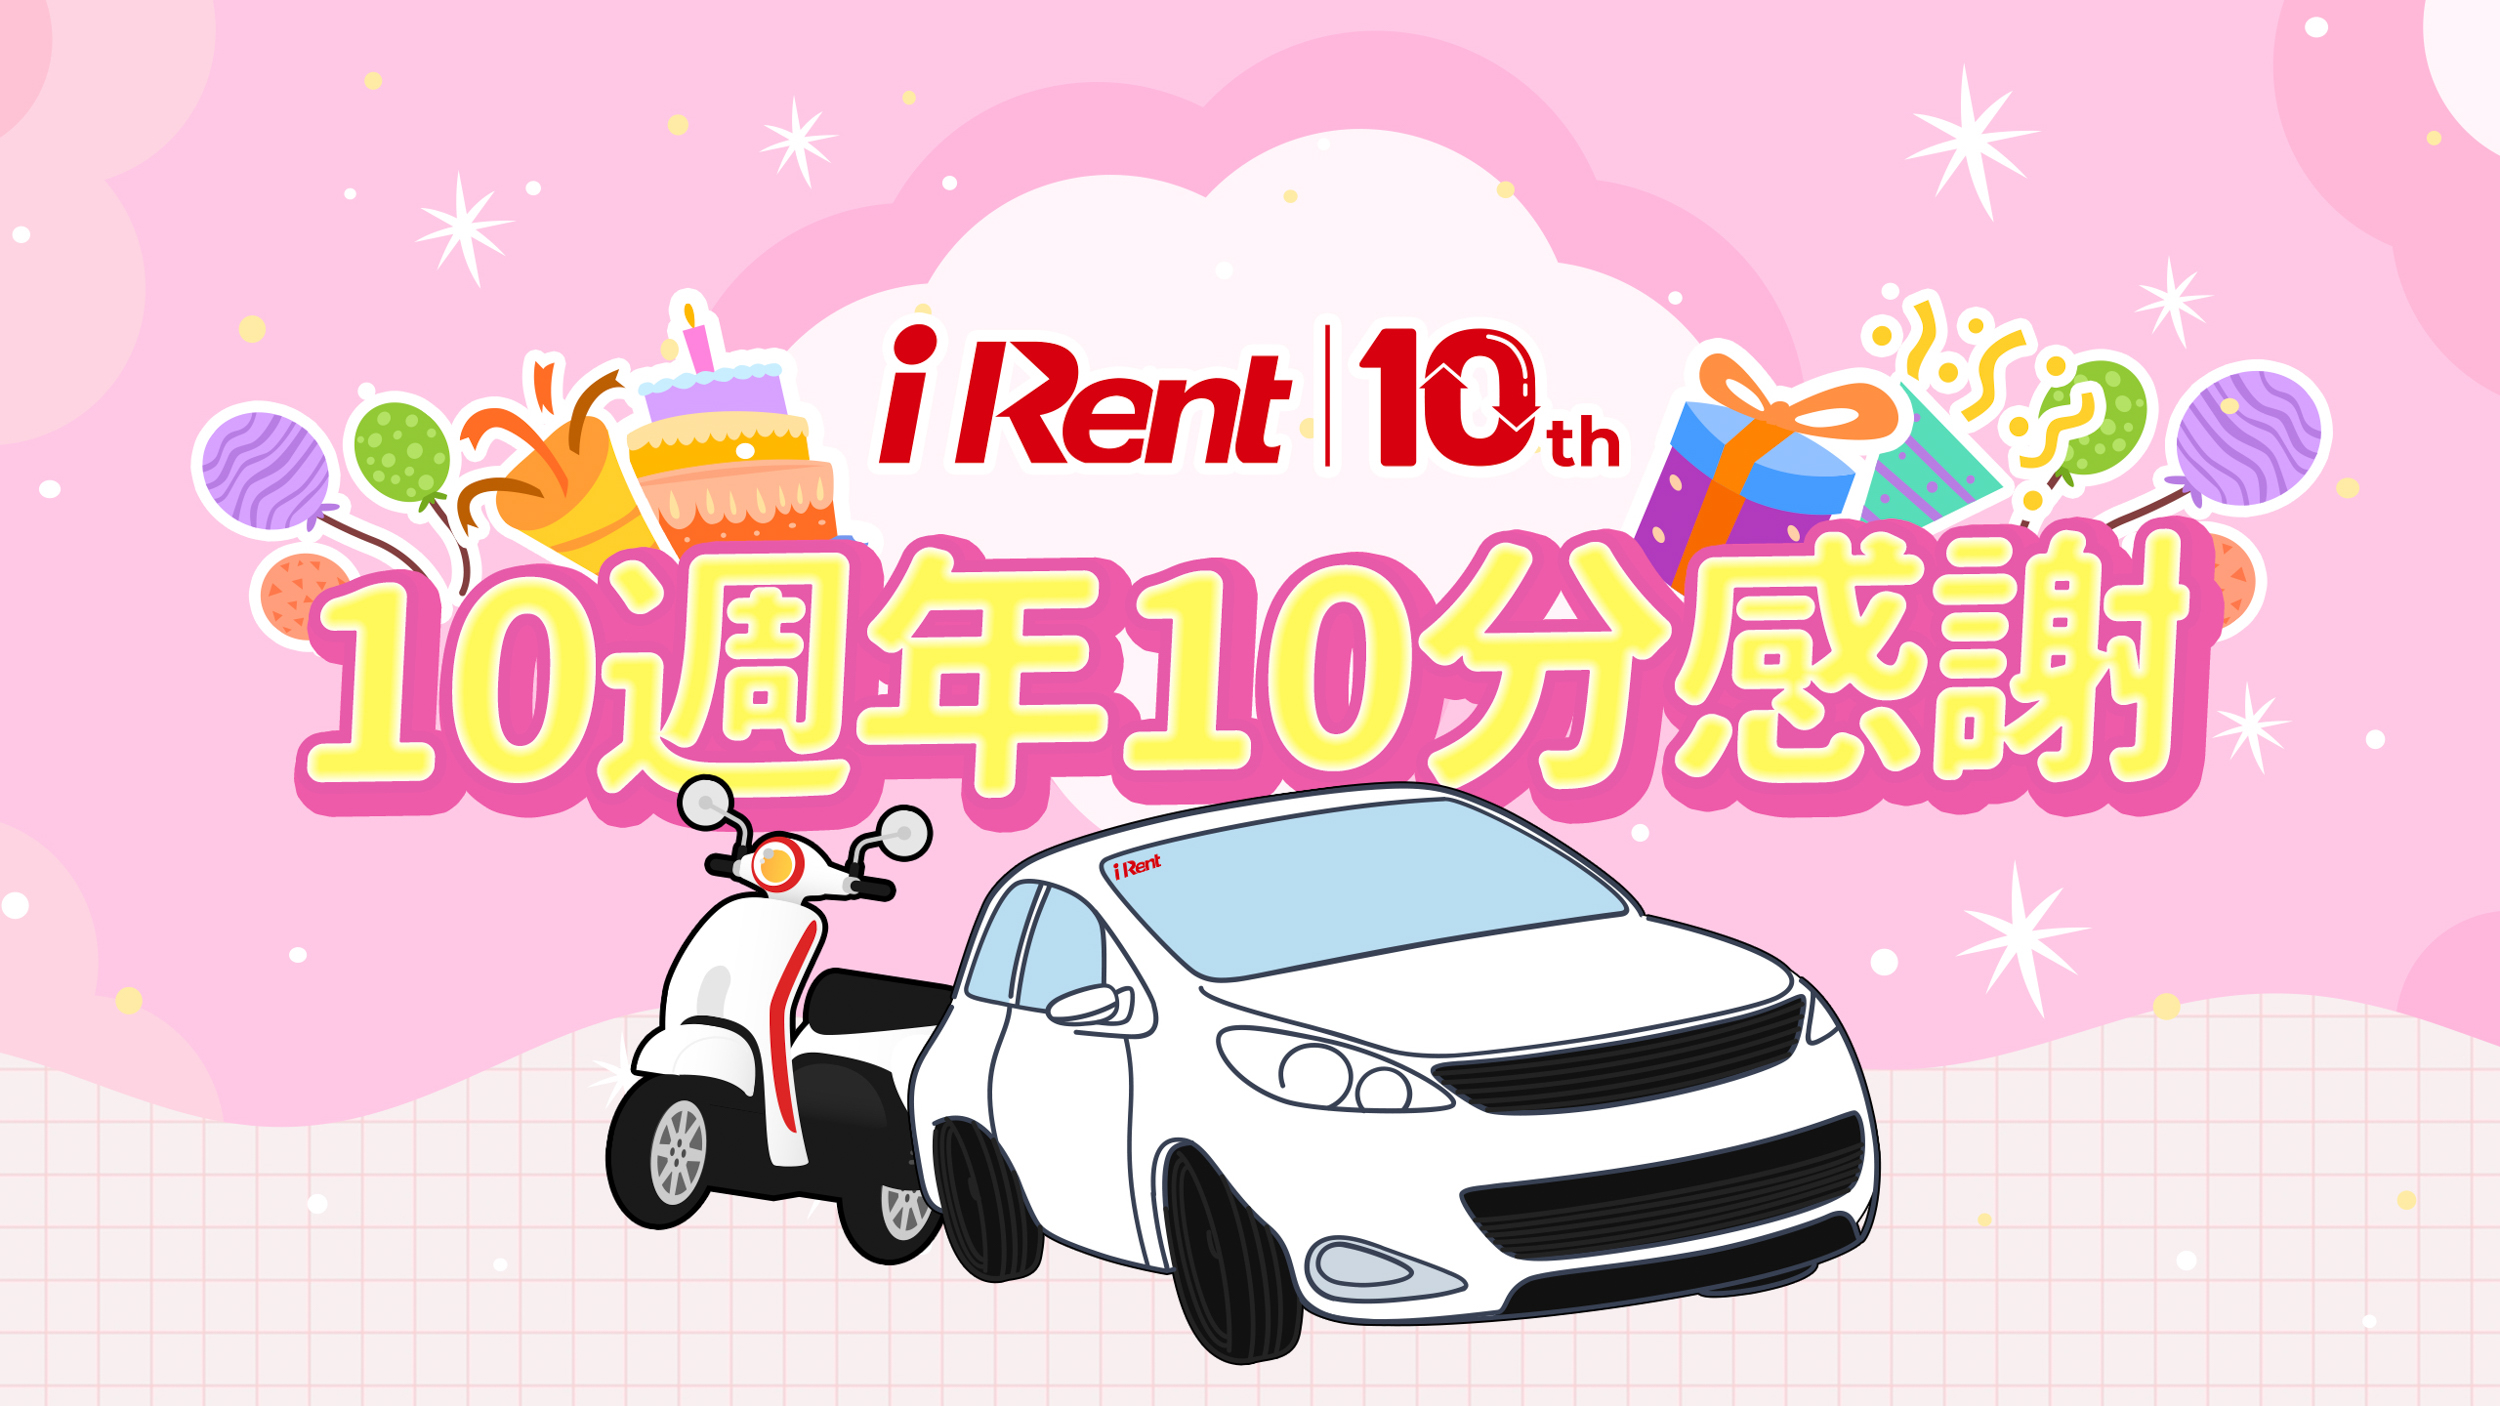 歡慶 iRent 10 週年，會員故事募集中！